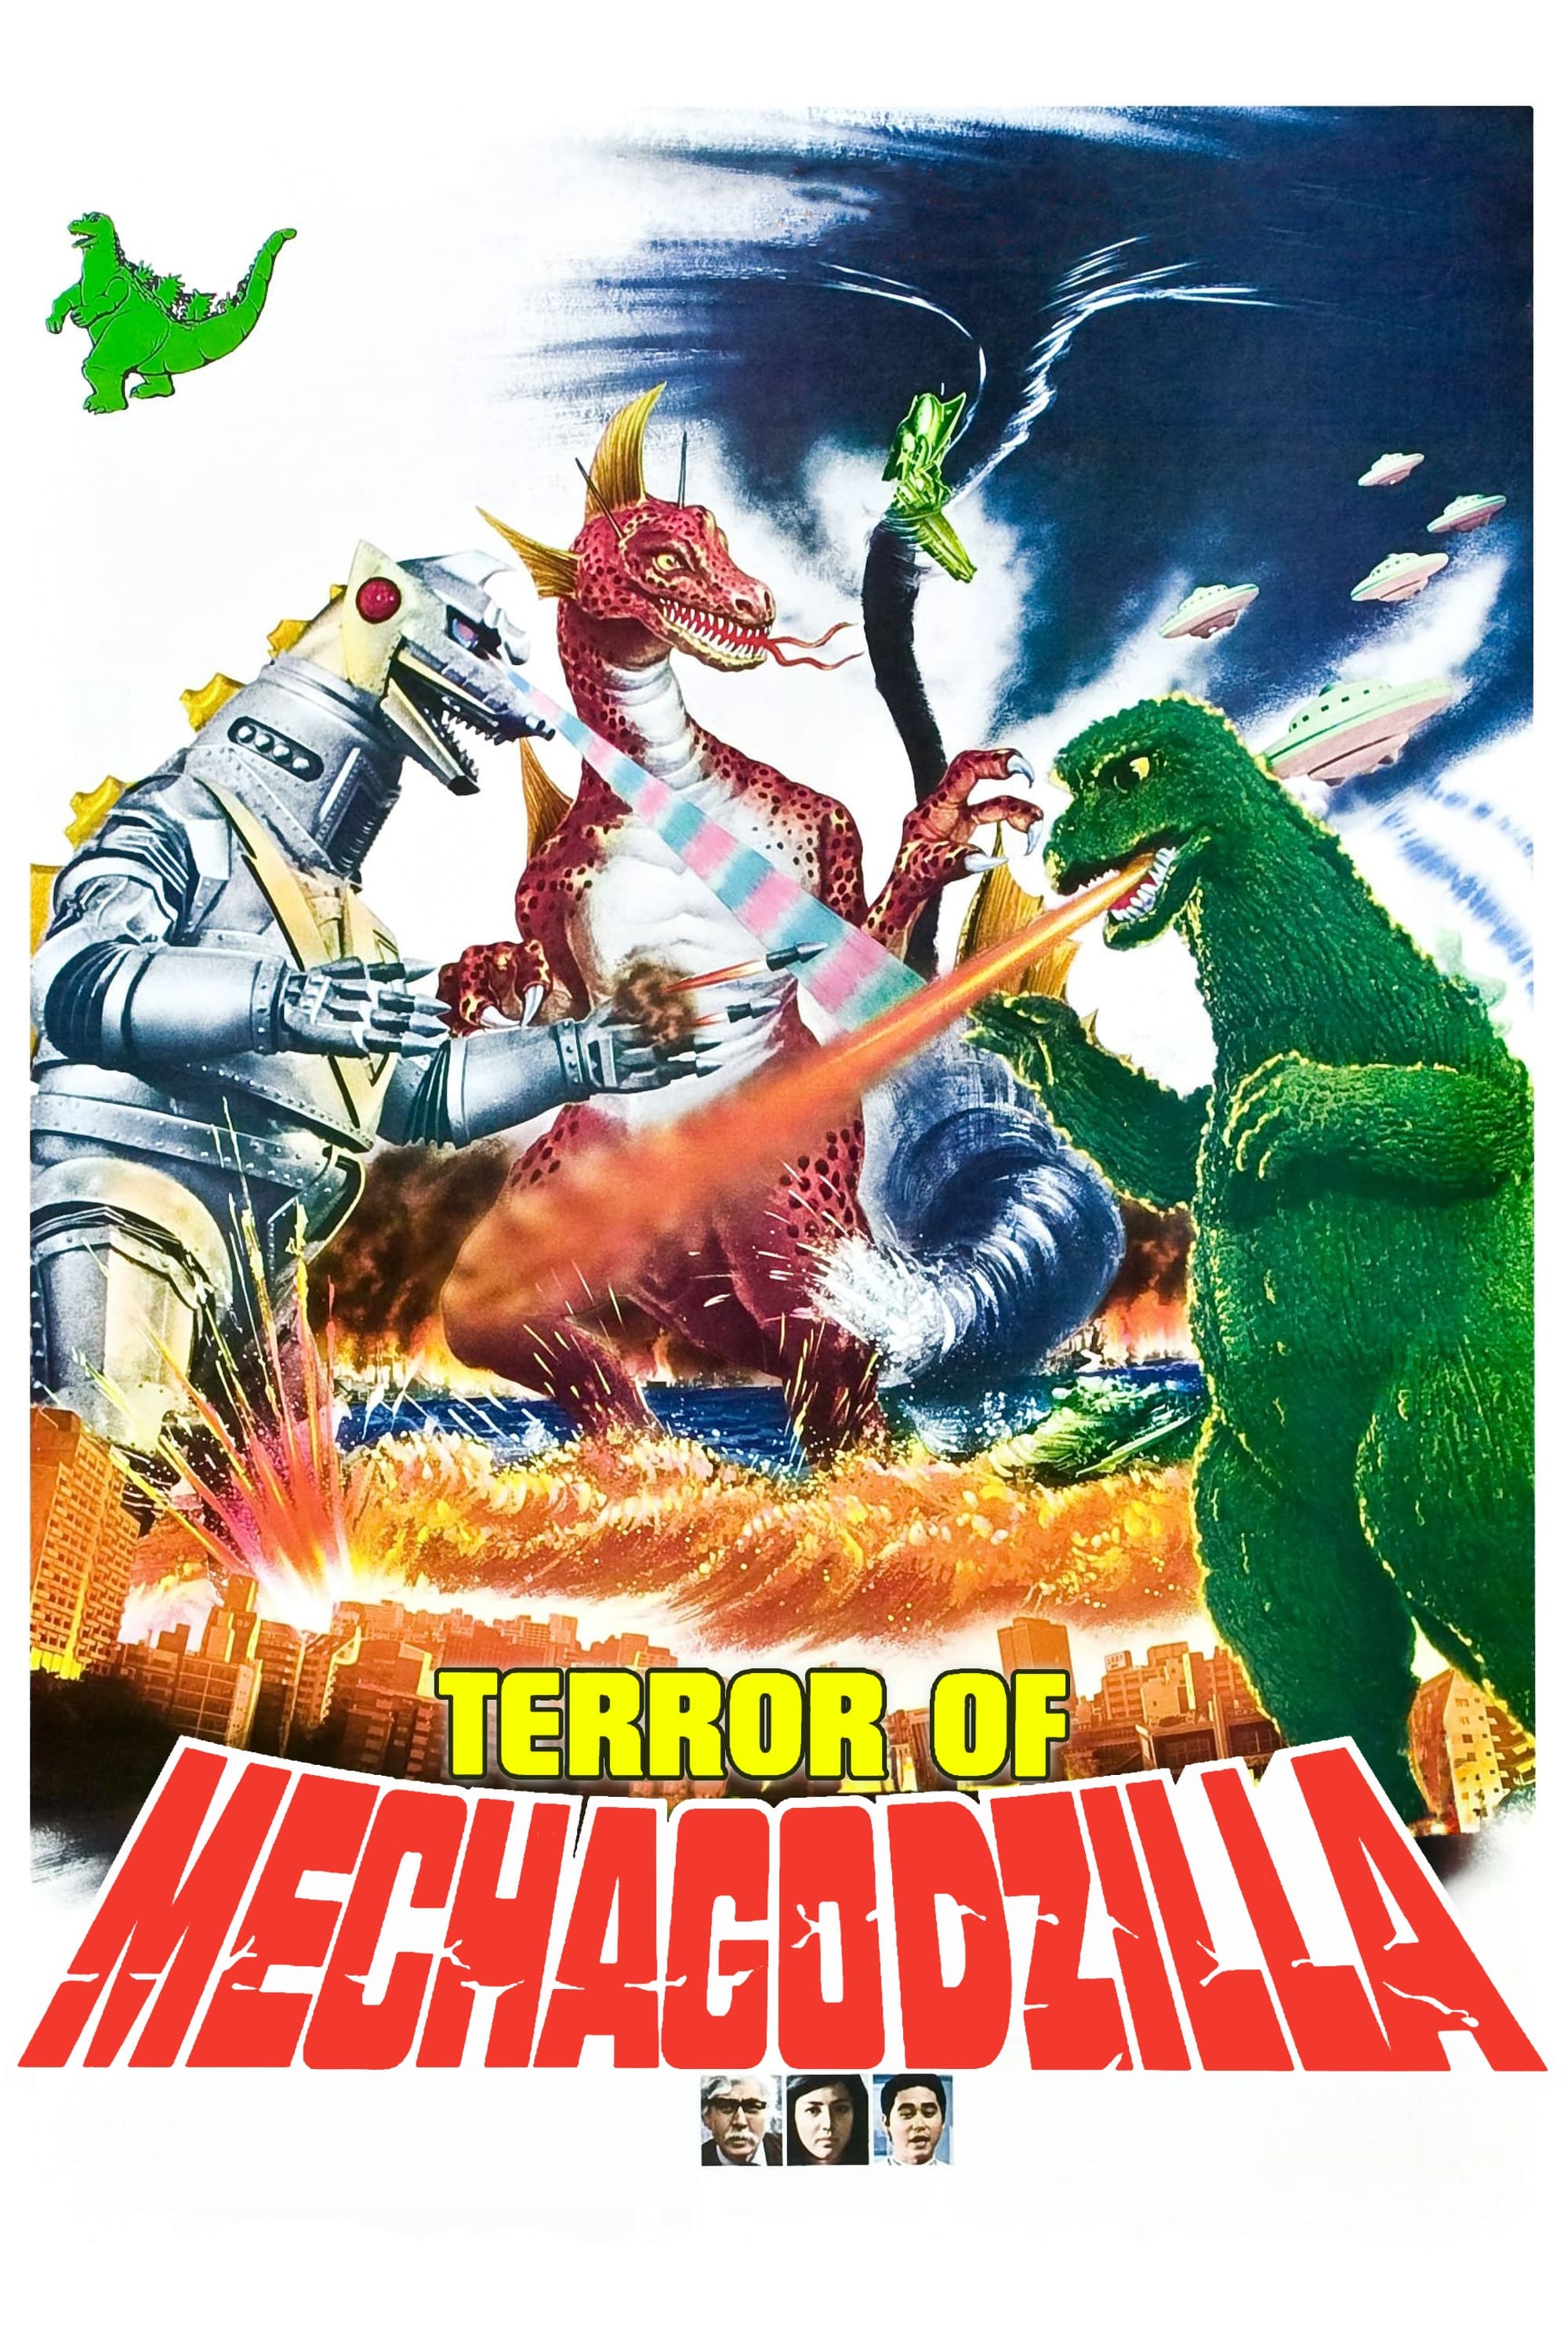 Godzilla contra Mechagodzilla